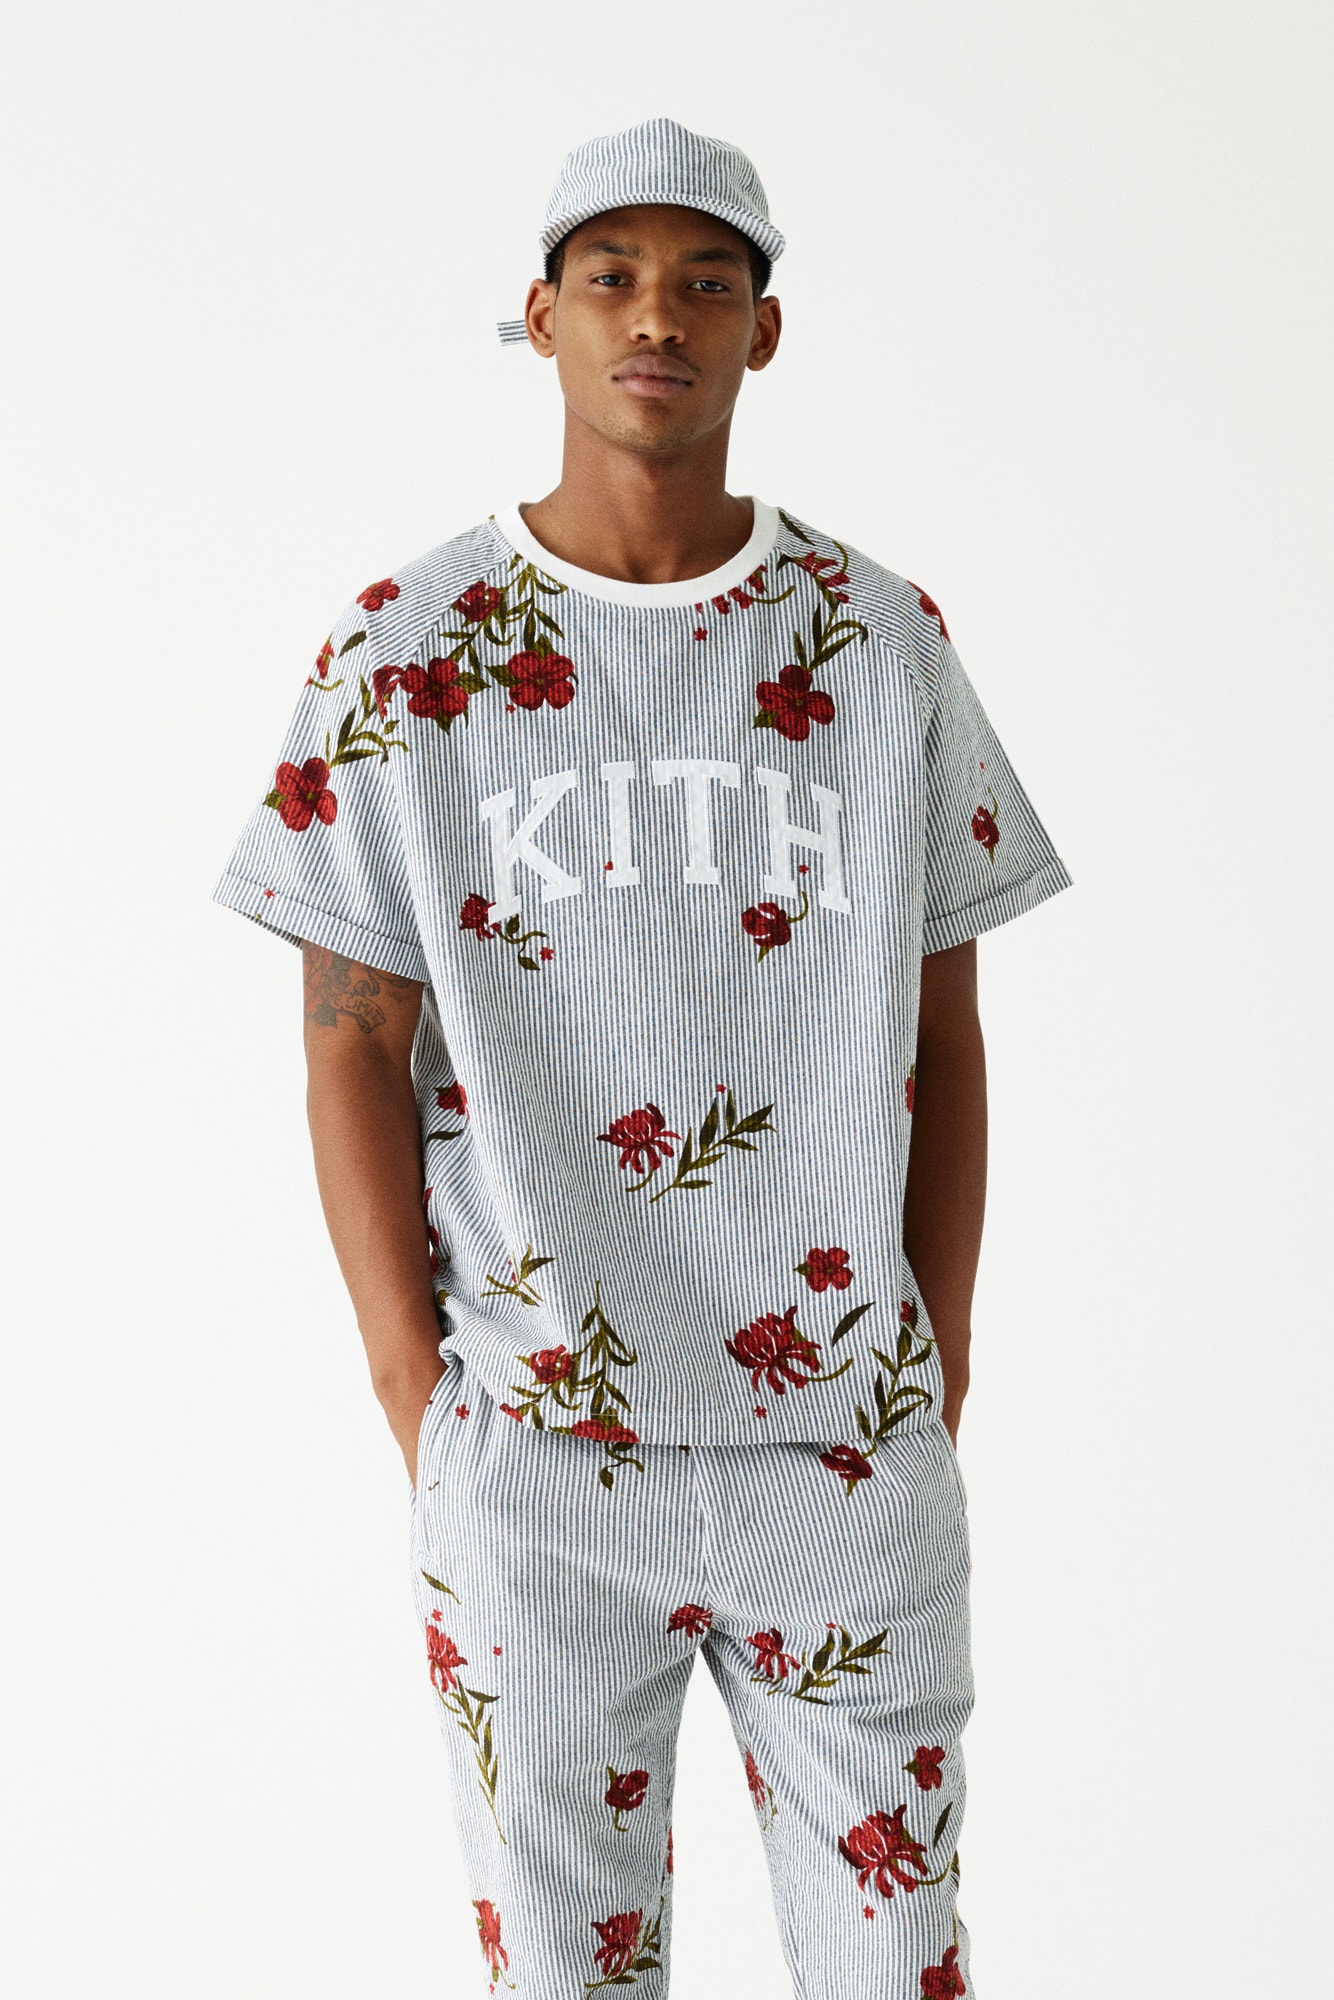 kith summer 2018 collection fashion ronnie fieg